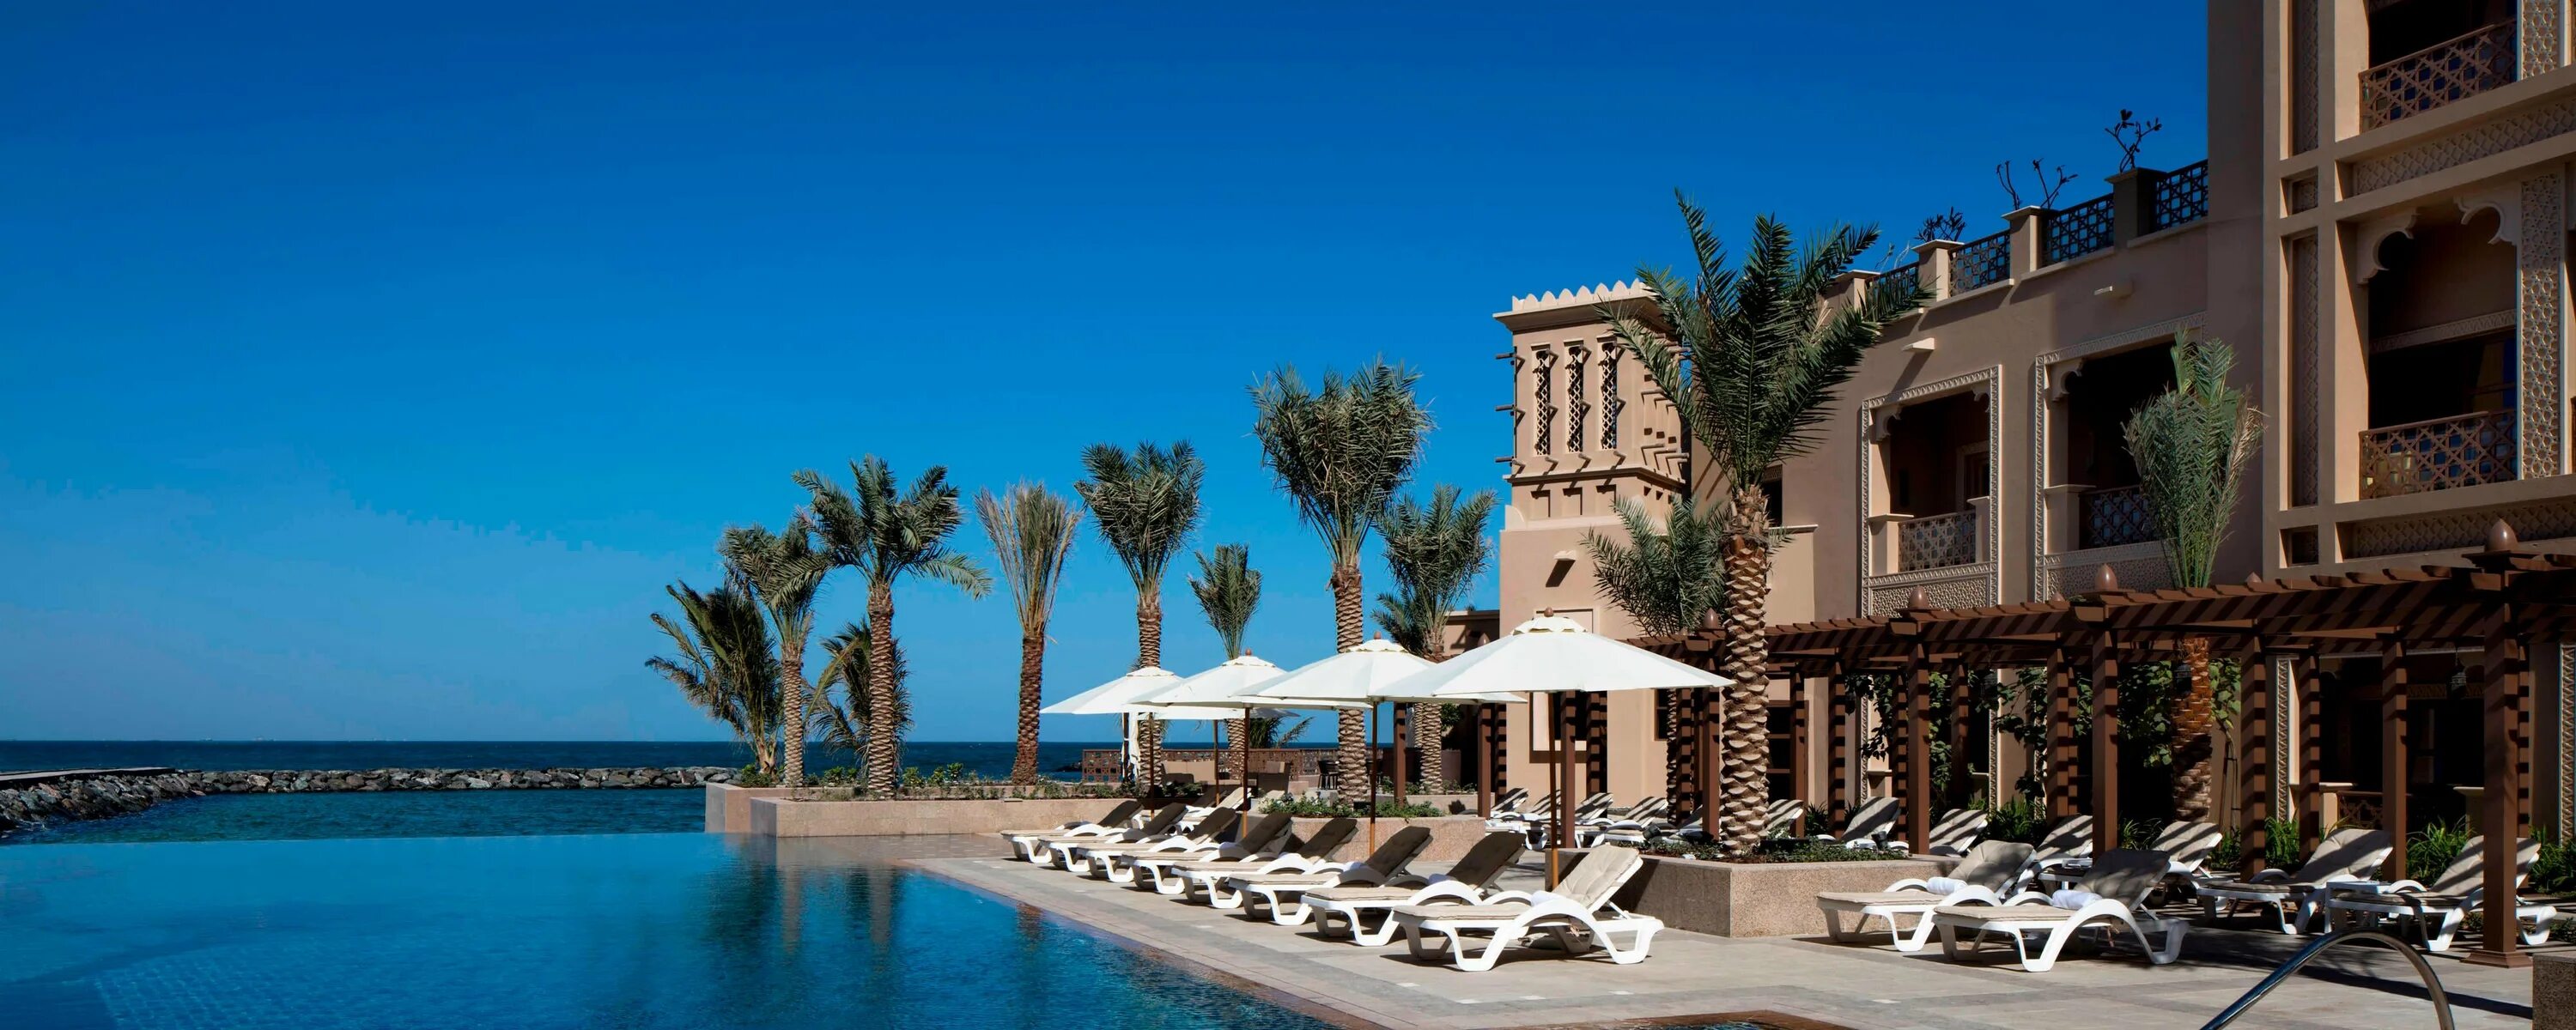 Отель Шератон Шарджа. Sheraton Sharjah Beach Resort Spa 5. Шарджа отель Шератон 5. Шератон Аджман. Шератон спа шарджа